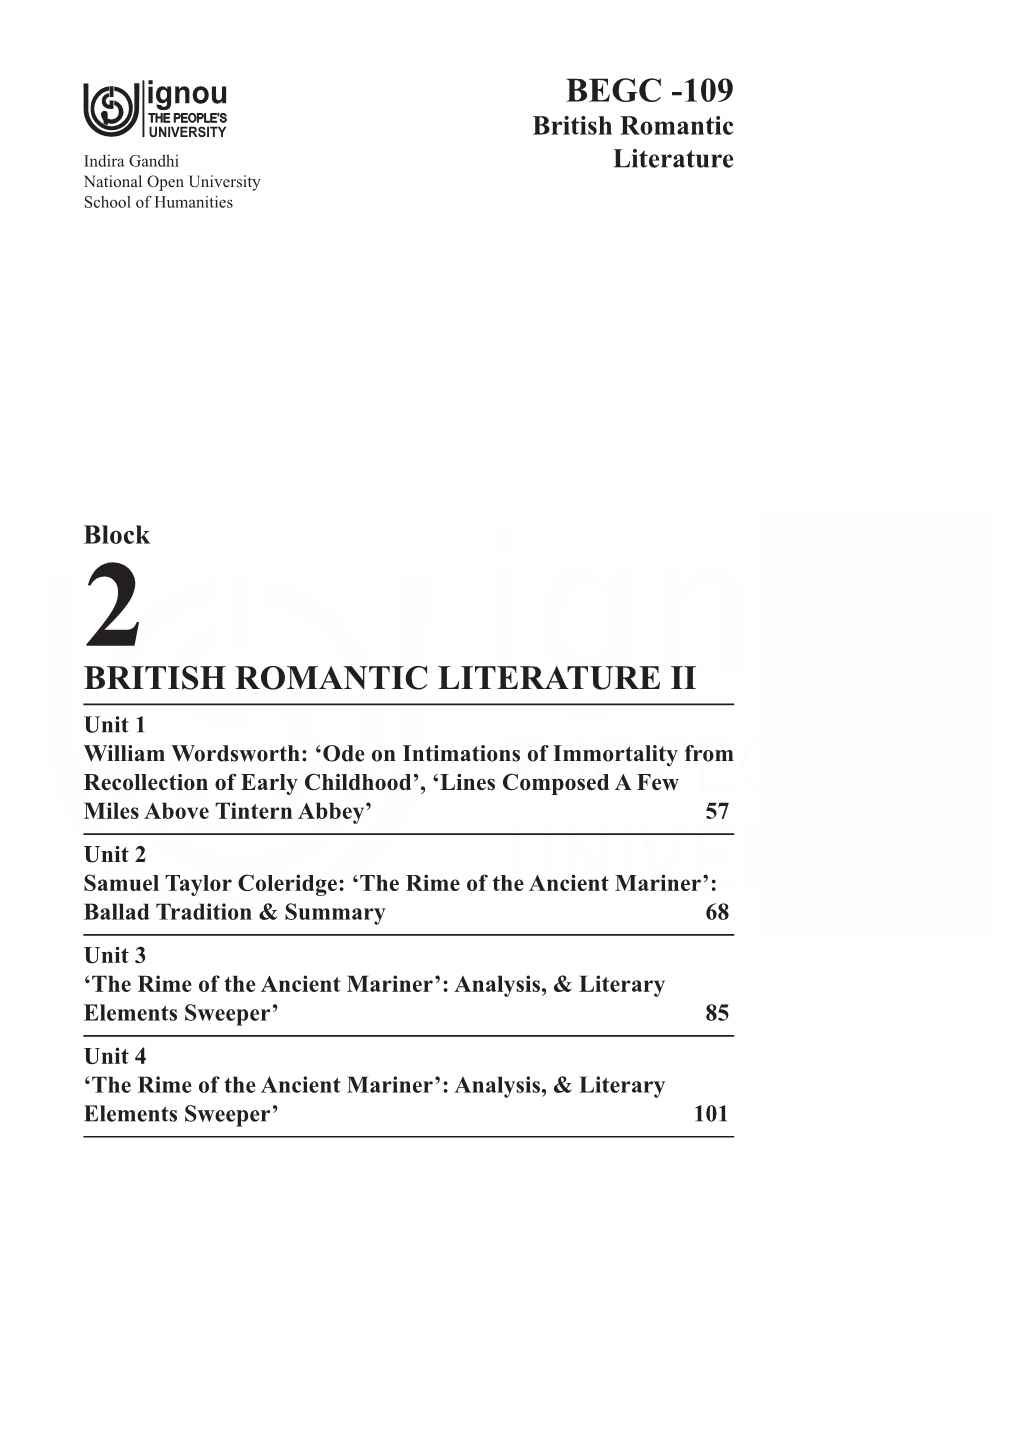 BRITISH Romantic Literature II Begc